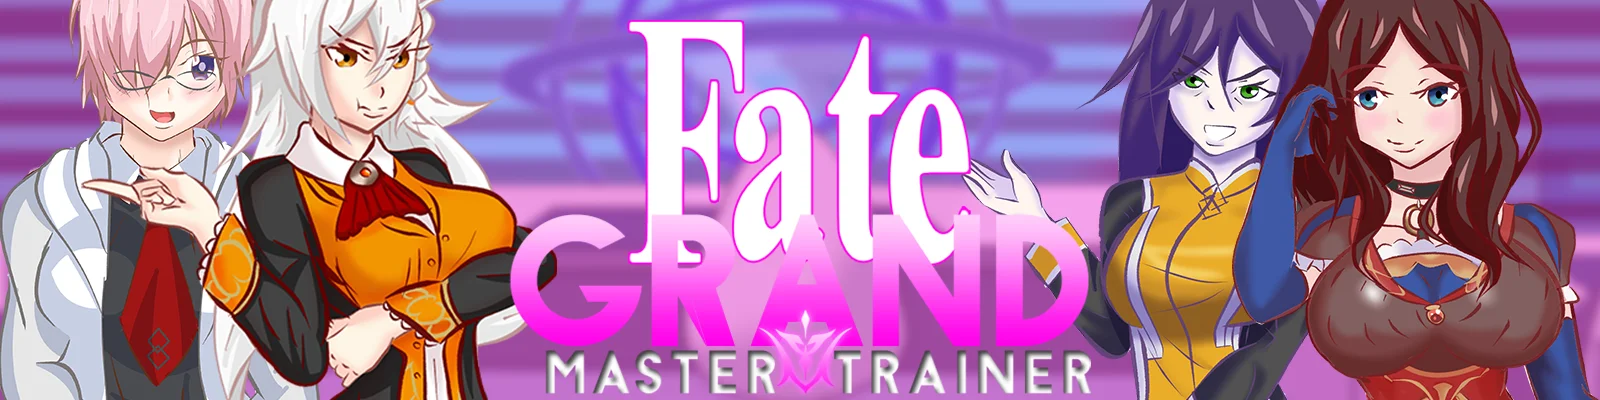 Fate Grand Master Trainer